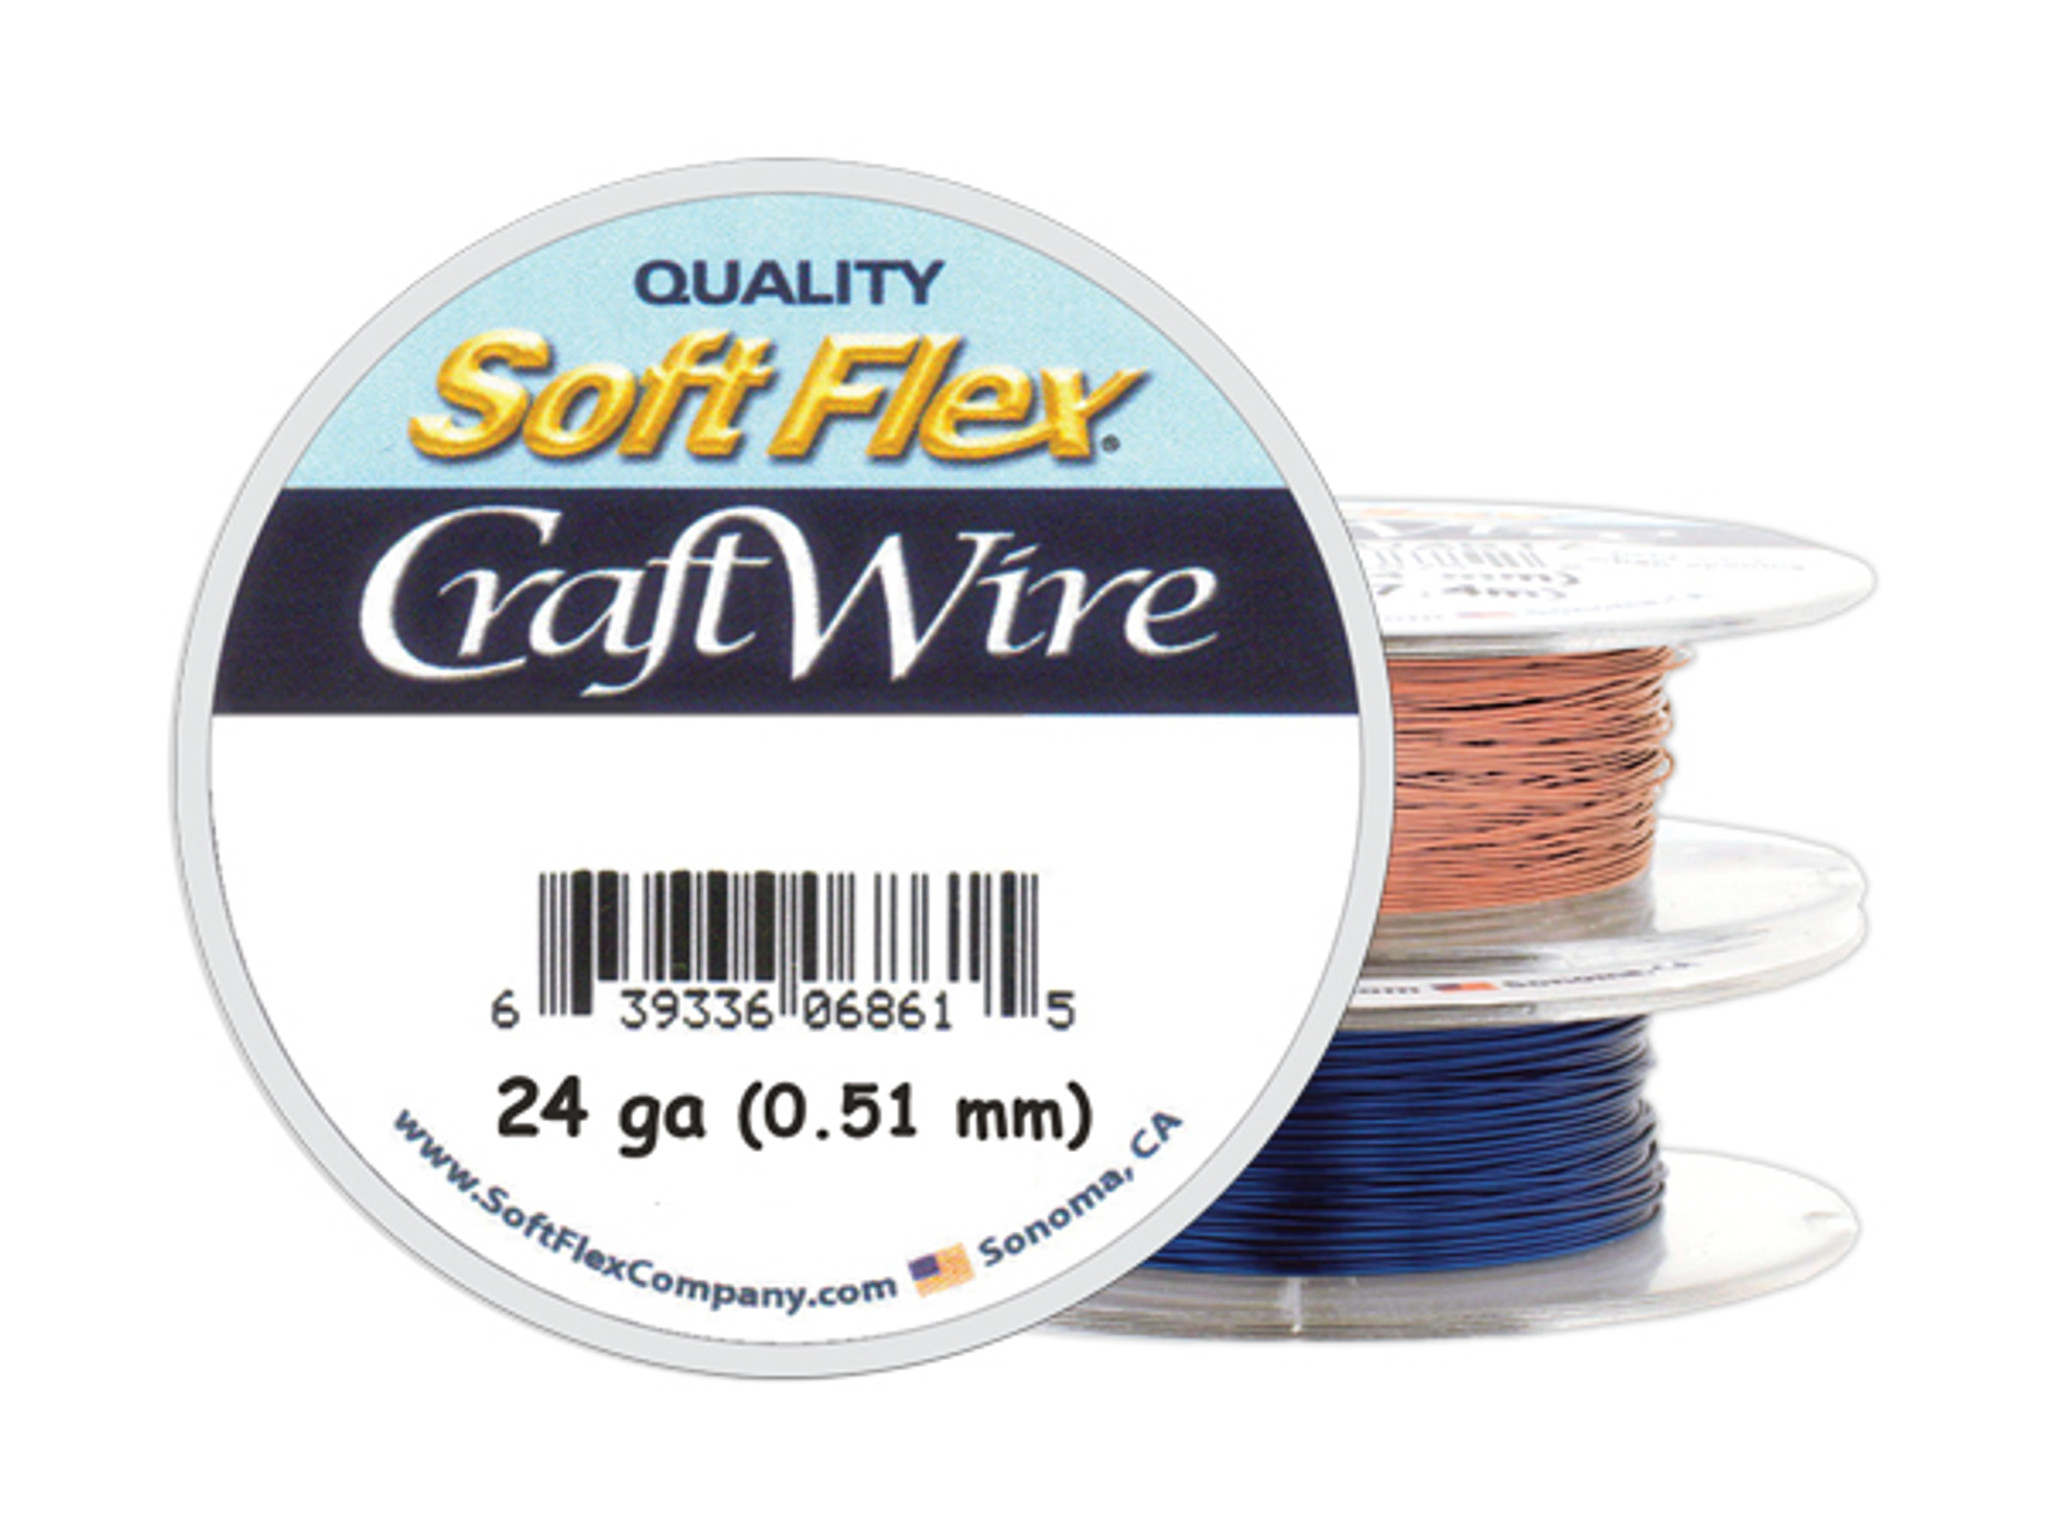 20 & 24 Gauge Craft Wire